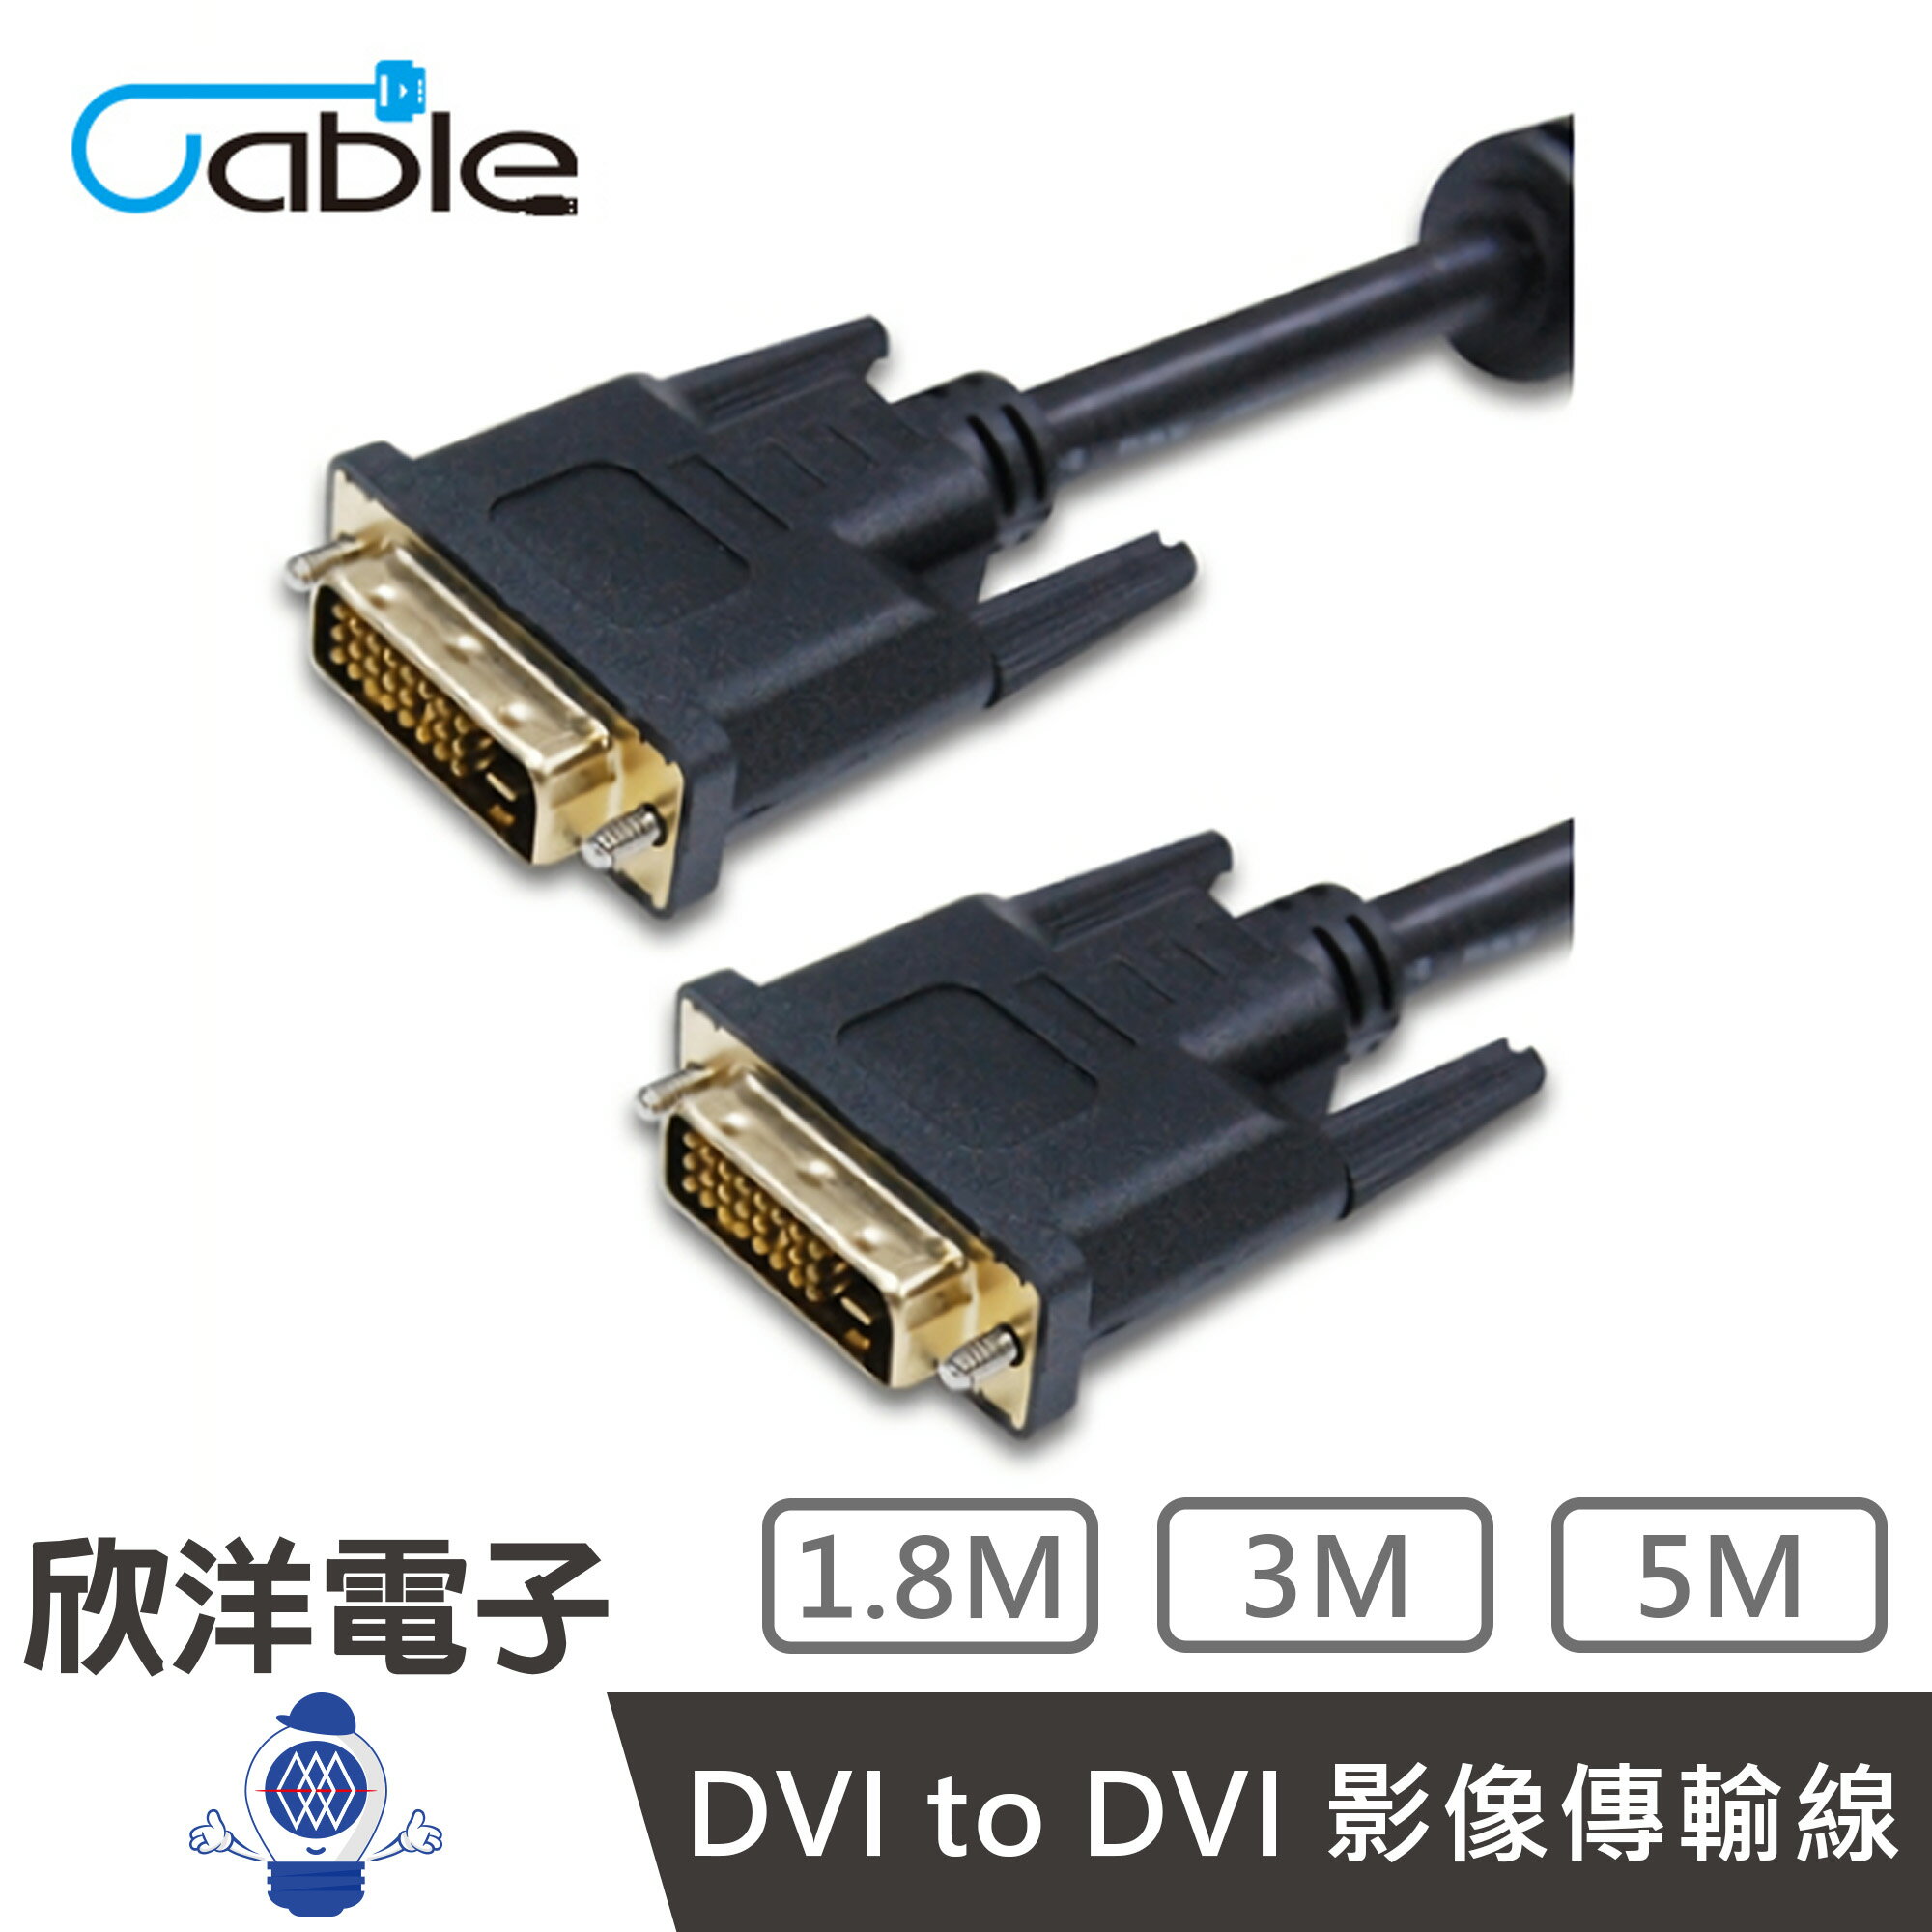 ※ 欣洋電子 ※ Cable DVI-DVI 高畫質數位影像傳輸線材(B-DVI24PP02-G) 1.8米/公尺/m 符合ROHS認證/24K全鍍金連結頭